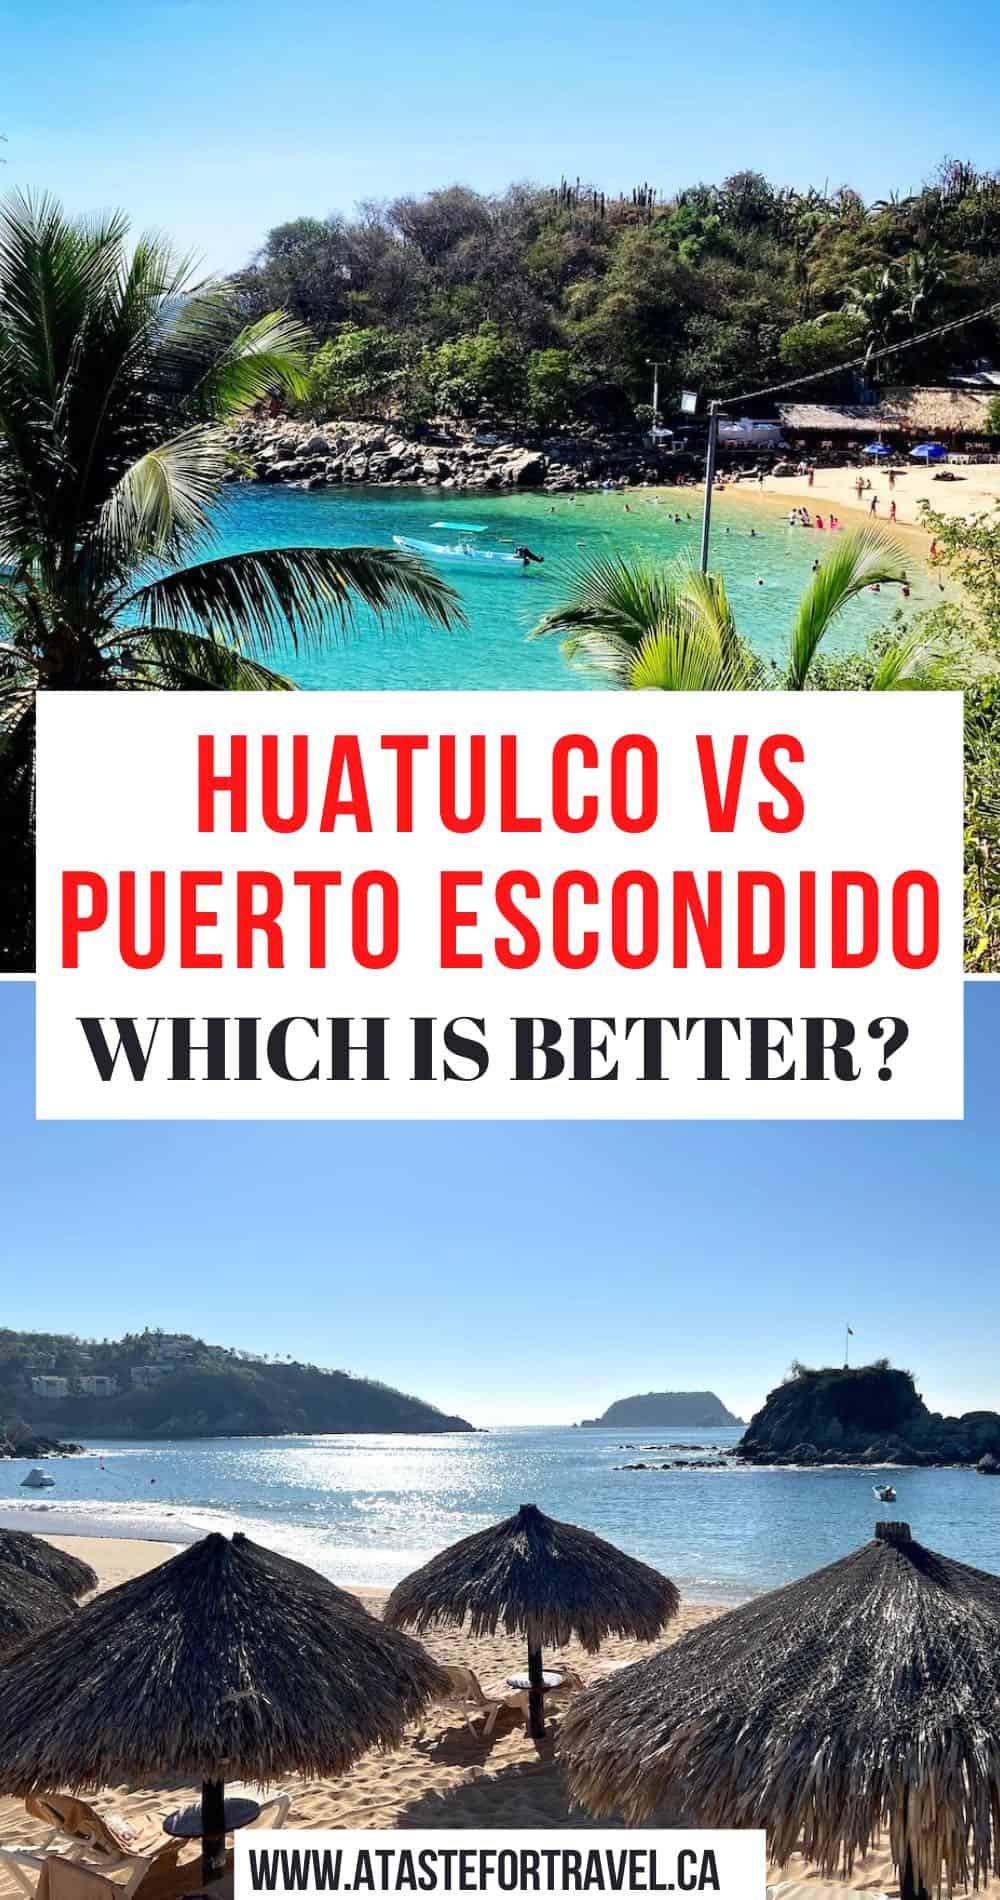 Huatulco vs Puerto Escondido beaches for Pinterest.